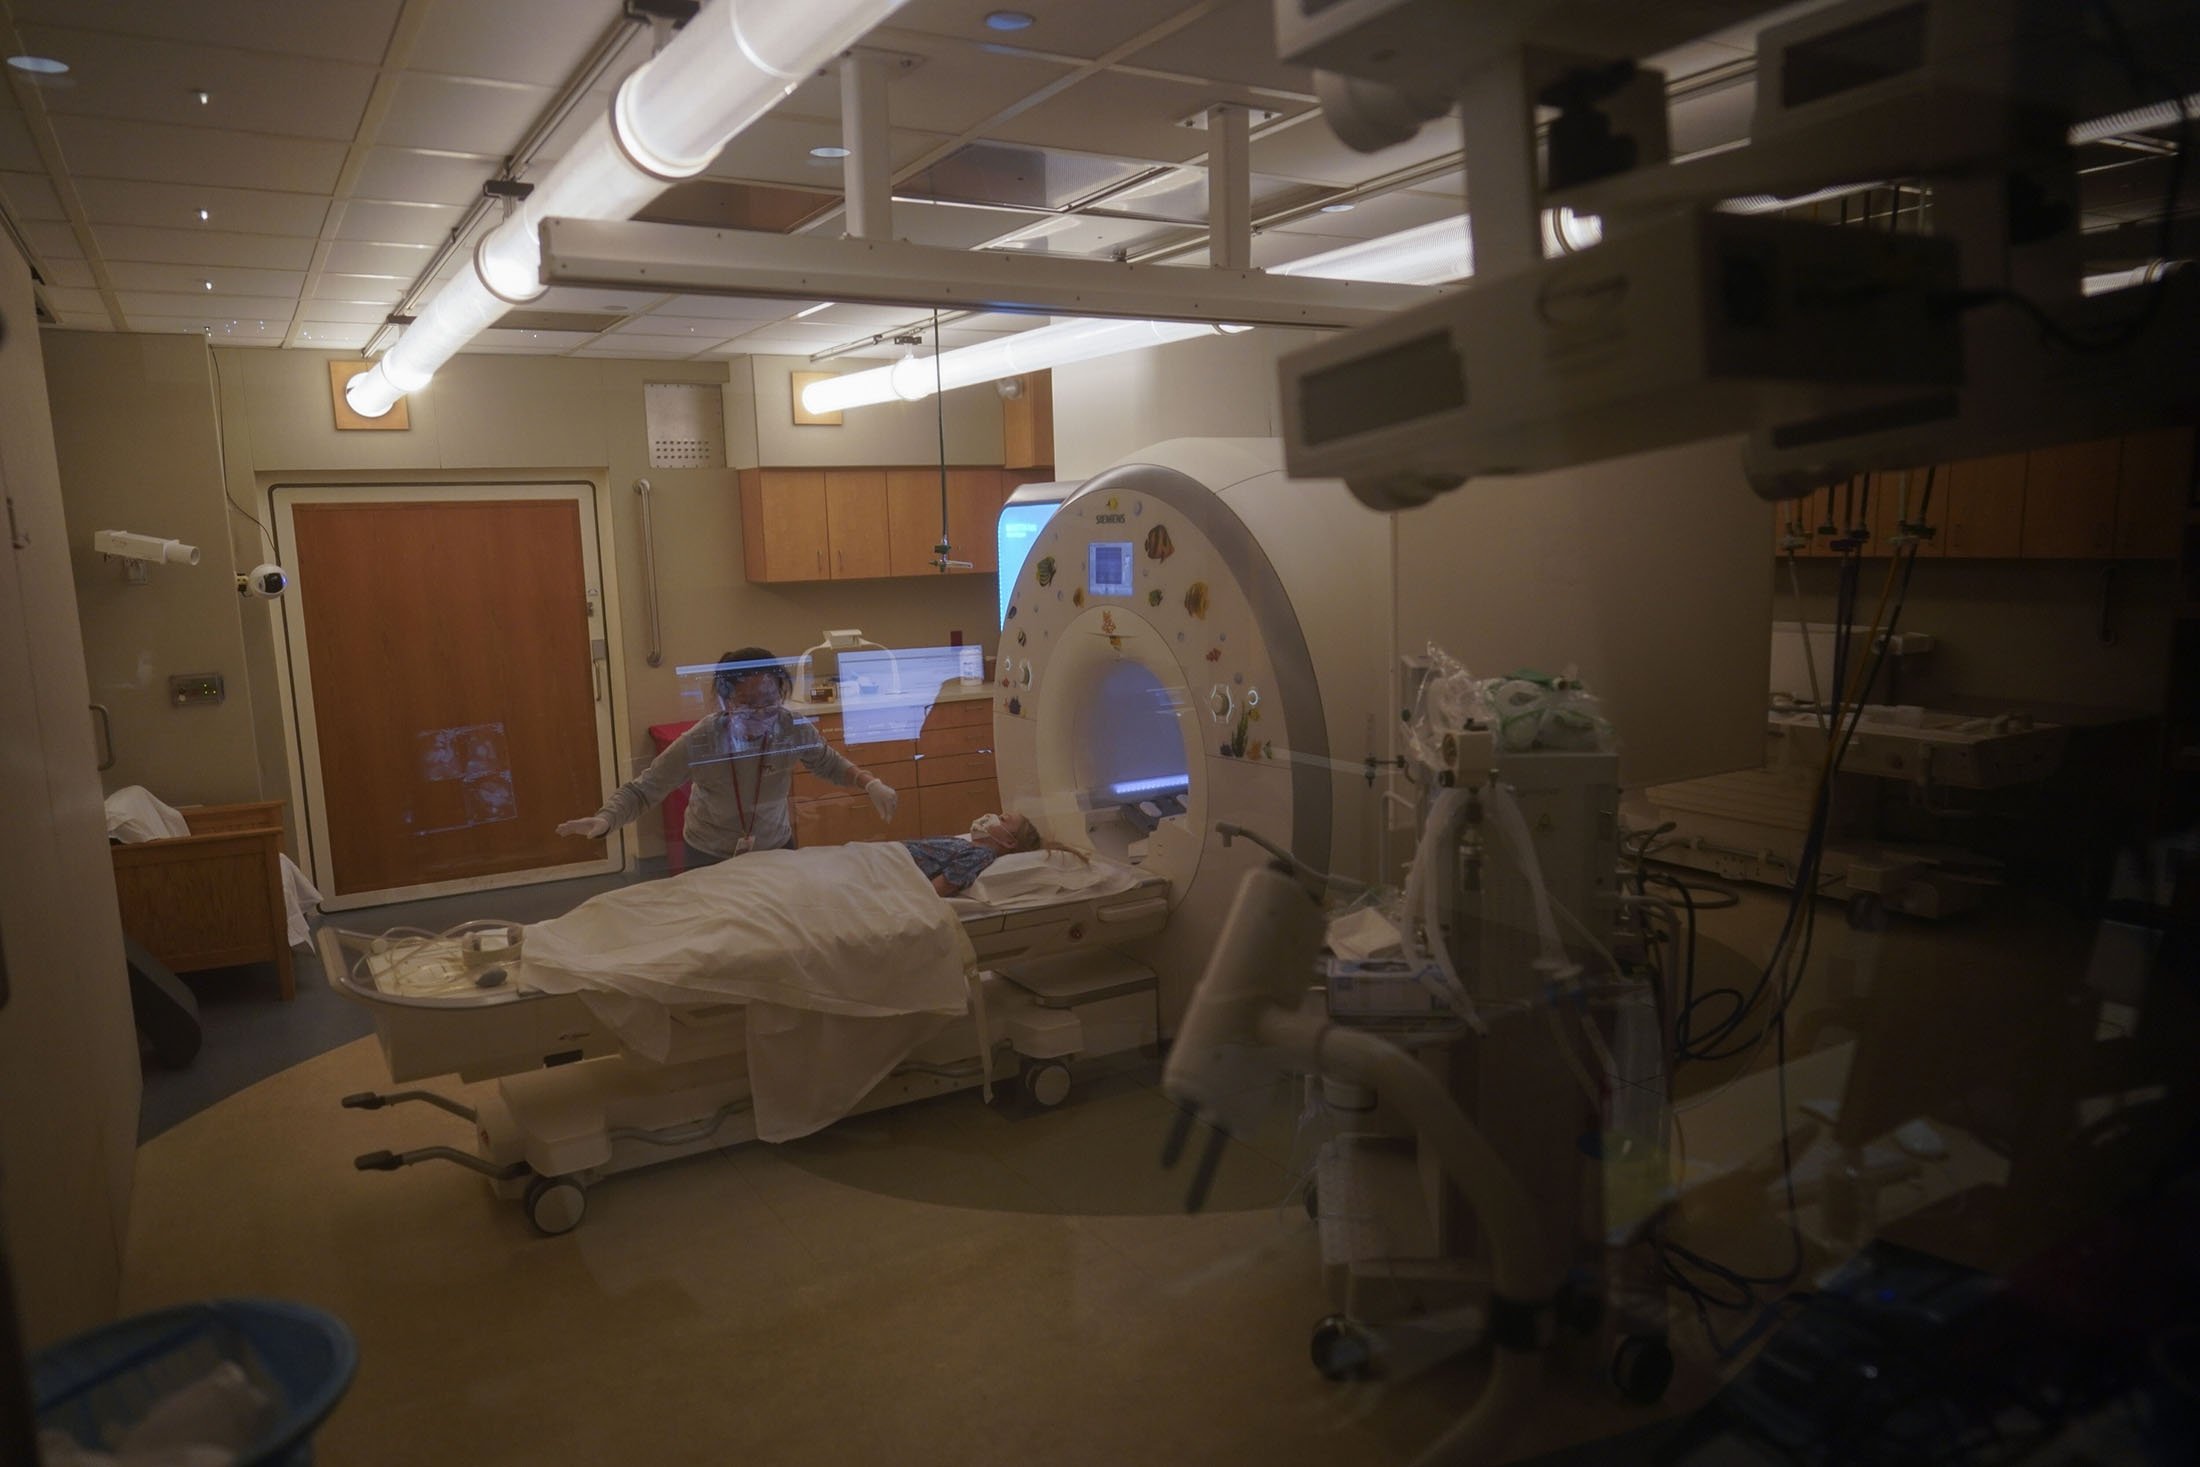 Charlie Forte, 8, dipersiapkan untuk MRI selama hari yang panjang pengujian di Rumah Sakit Nasional Anak, di Washington, AS, 26 Januari 2022. (AP Photo)